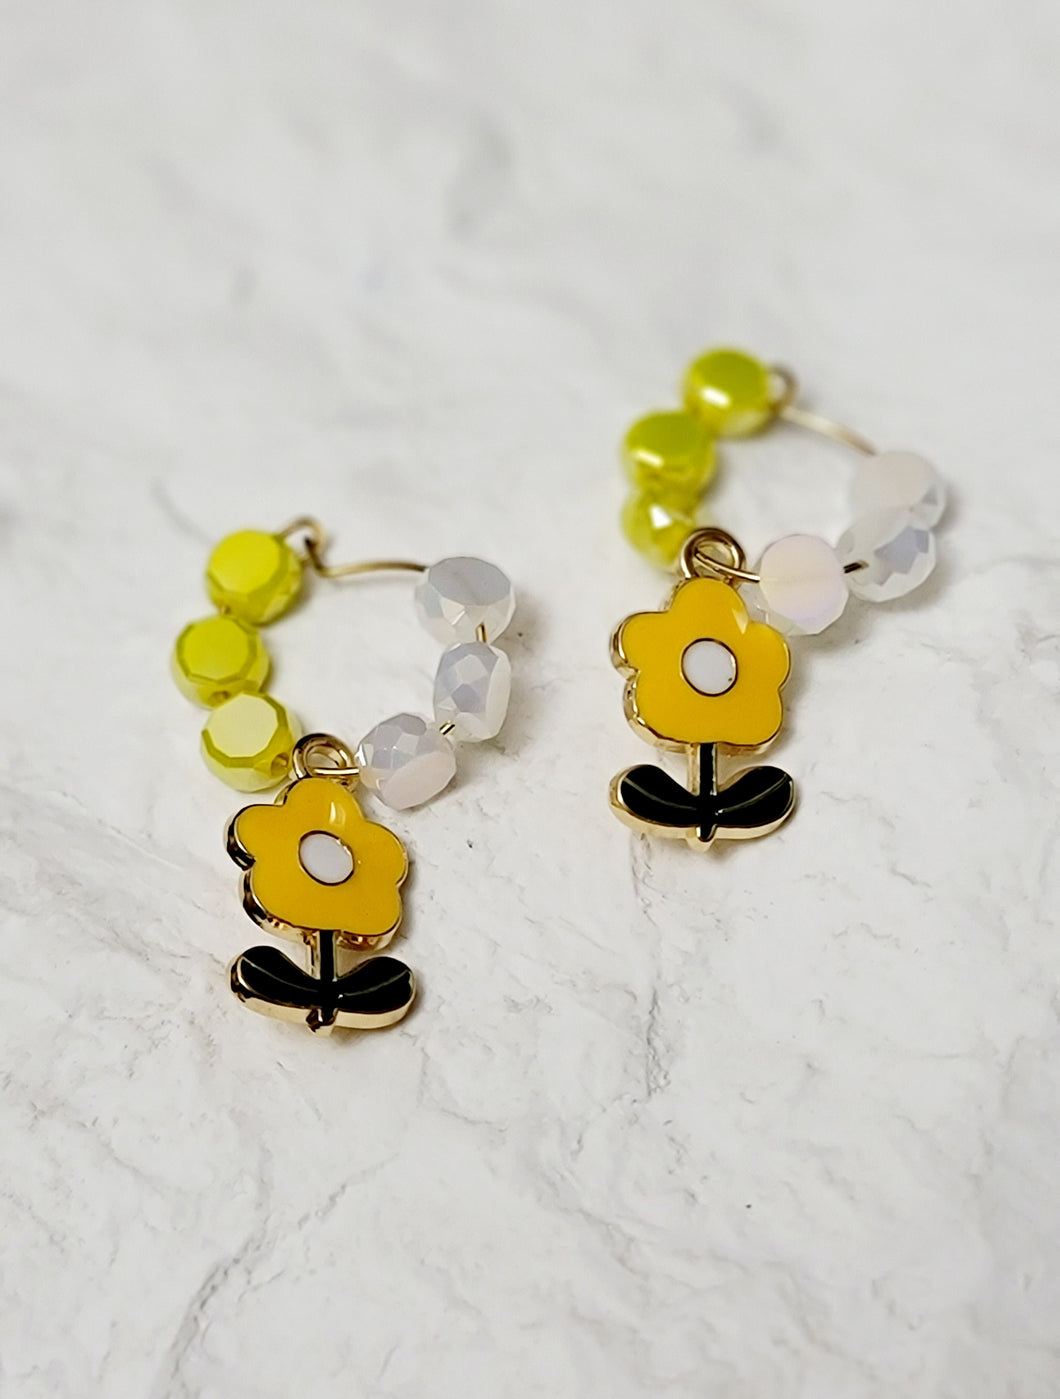 Accessories - Earring : Cute Flower Pair Earring Loop